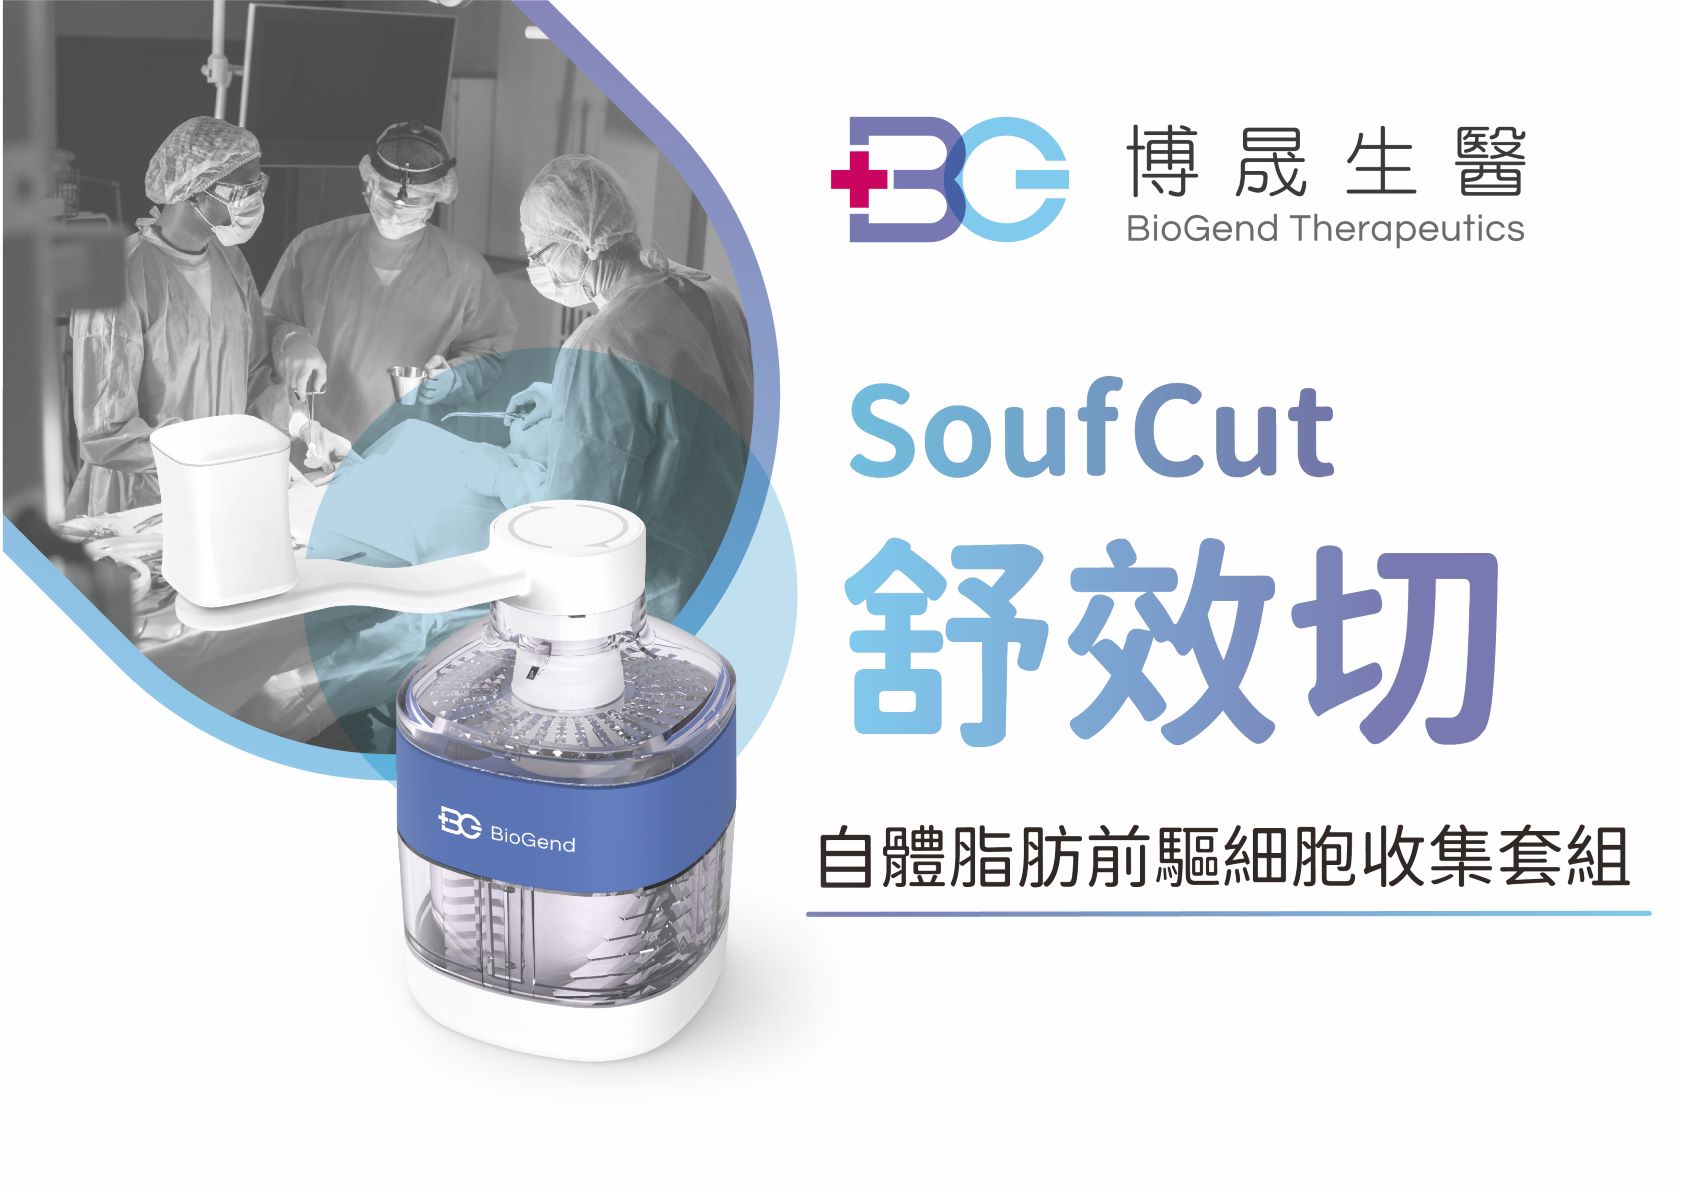 SoufCut Soft Tissue Processor (Sterile)-BIOGEND THERAPEUTICS CO., LTD.